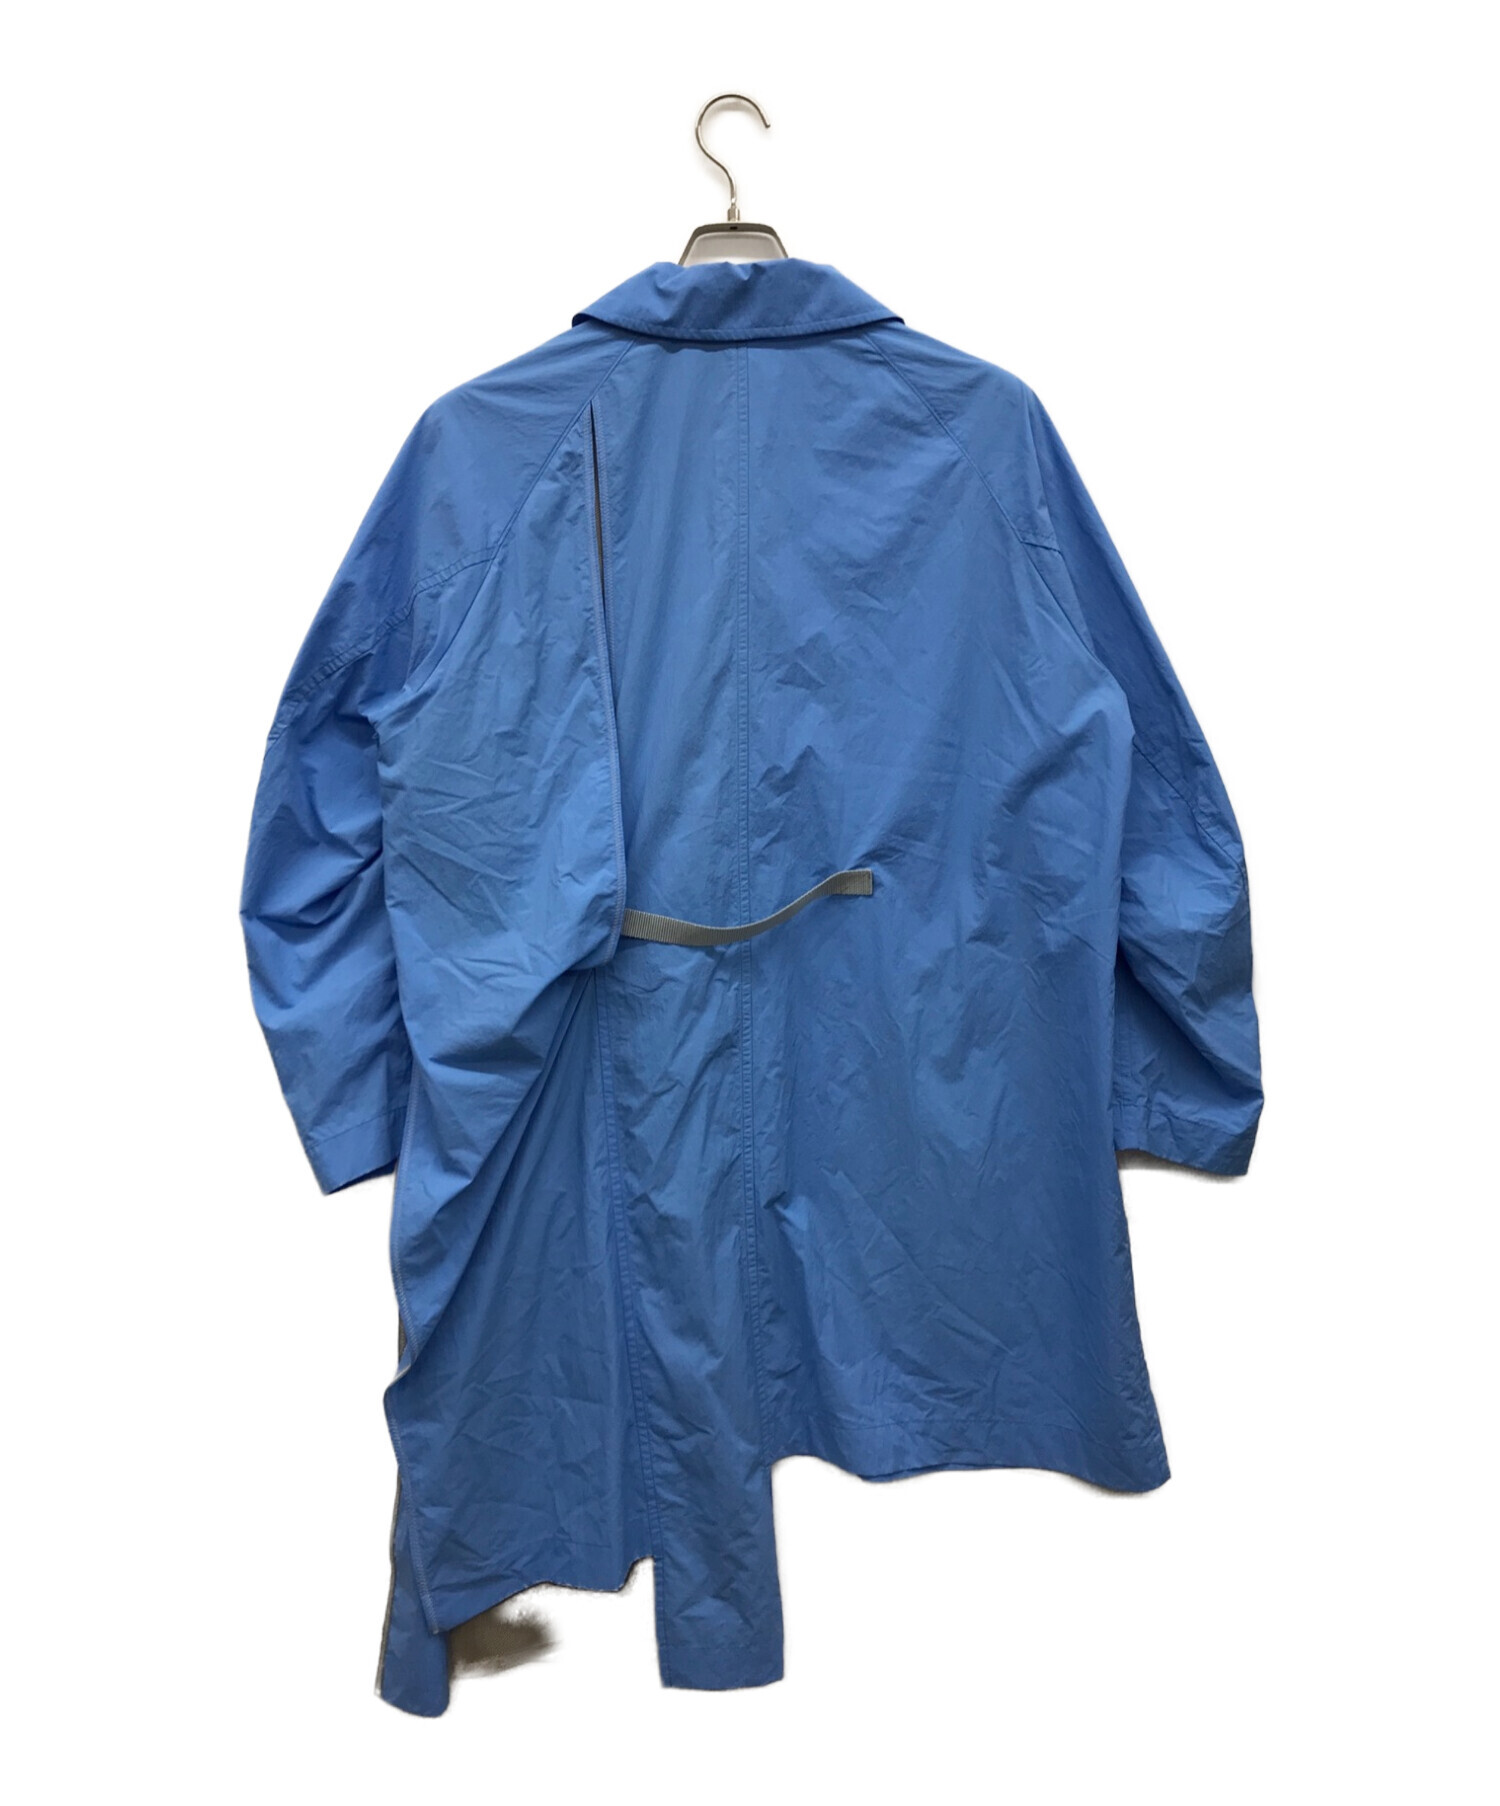 【SALE高品質】新品未使用 LAブランド 大空のスカイブルー綺麗色アート春アウター スプリングコート